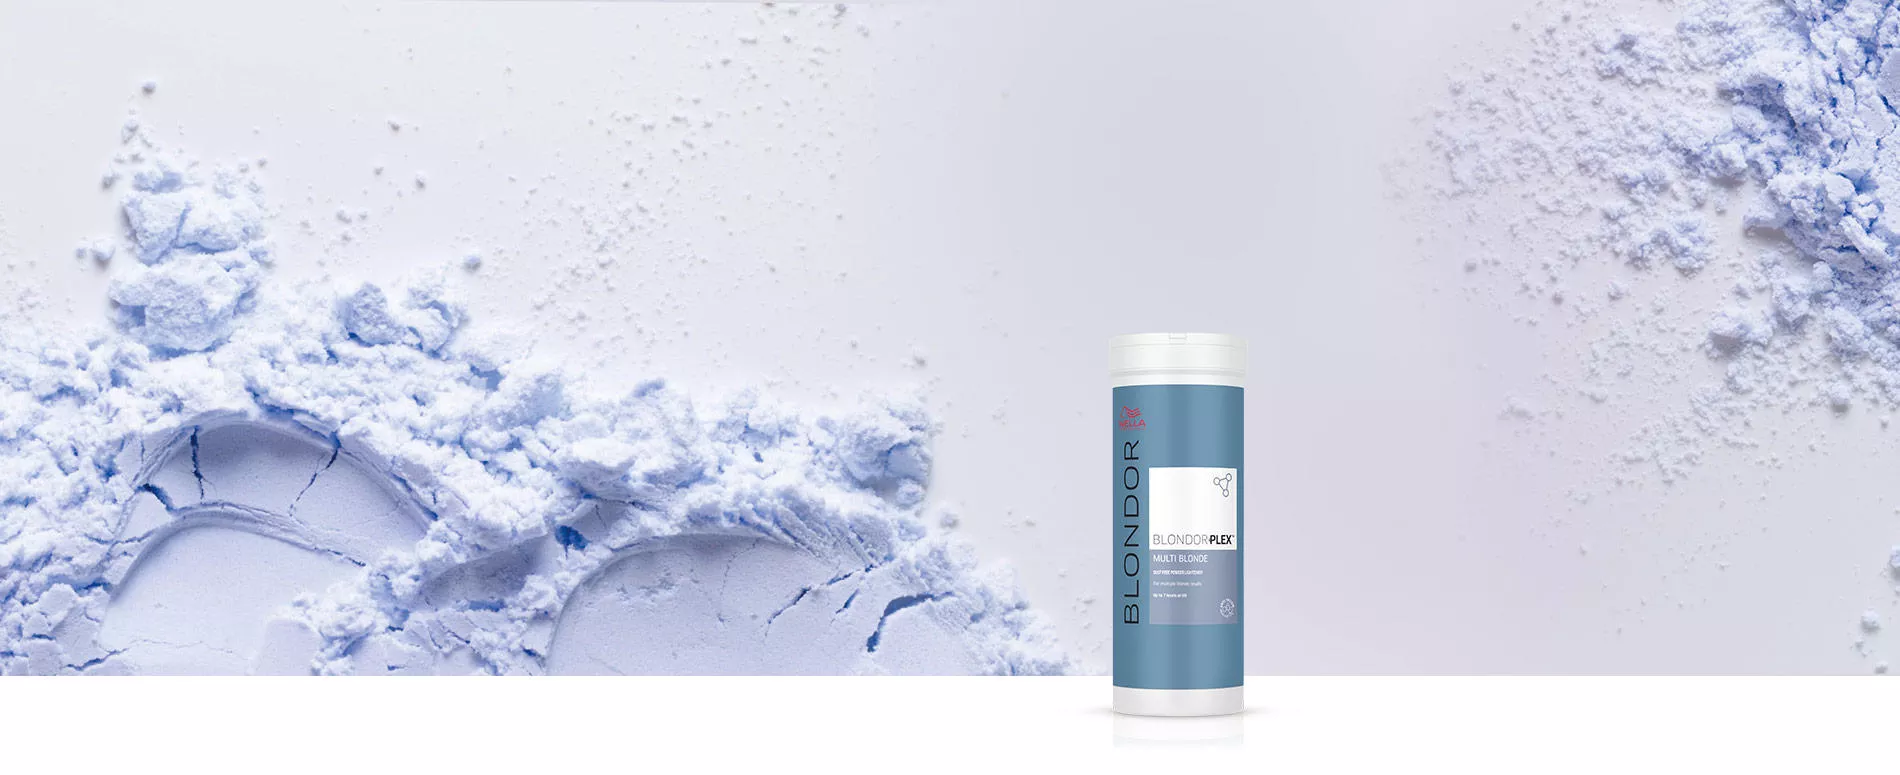 Packshot di BlondorPlex circondata da polvere blu su uno sfondo grigio